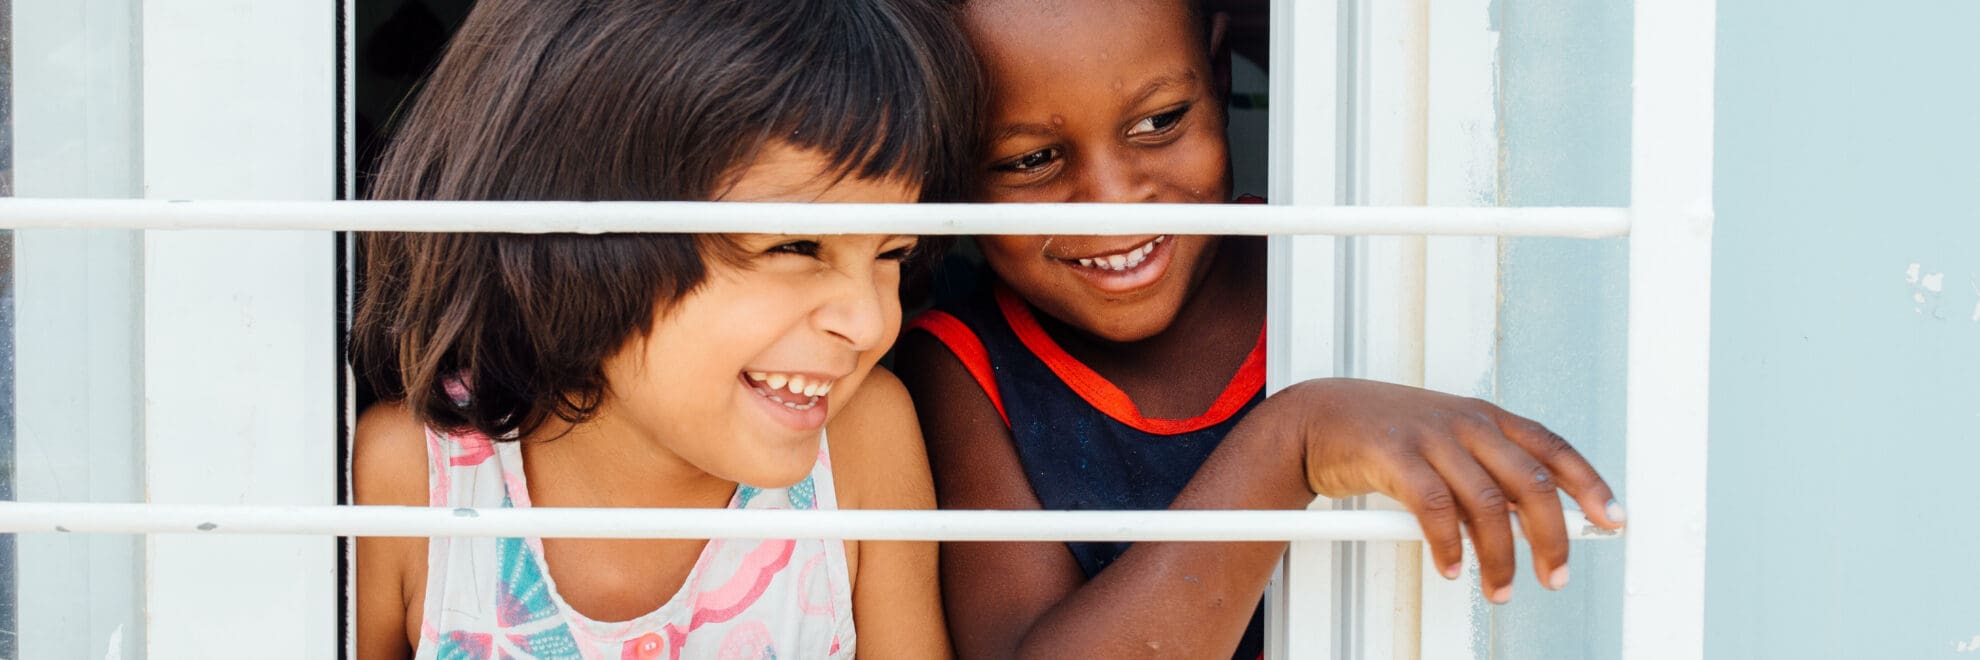 Två barn skrattar och tittar ut genom ett fönster.